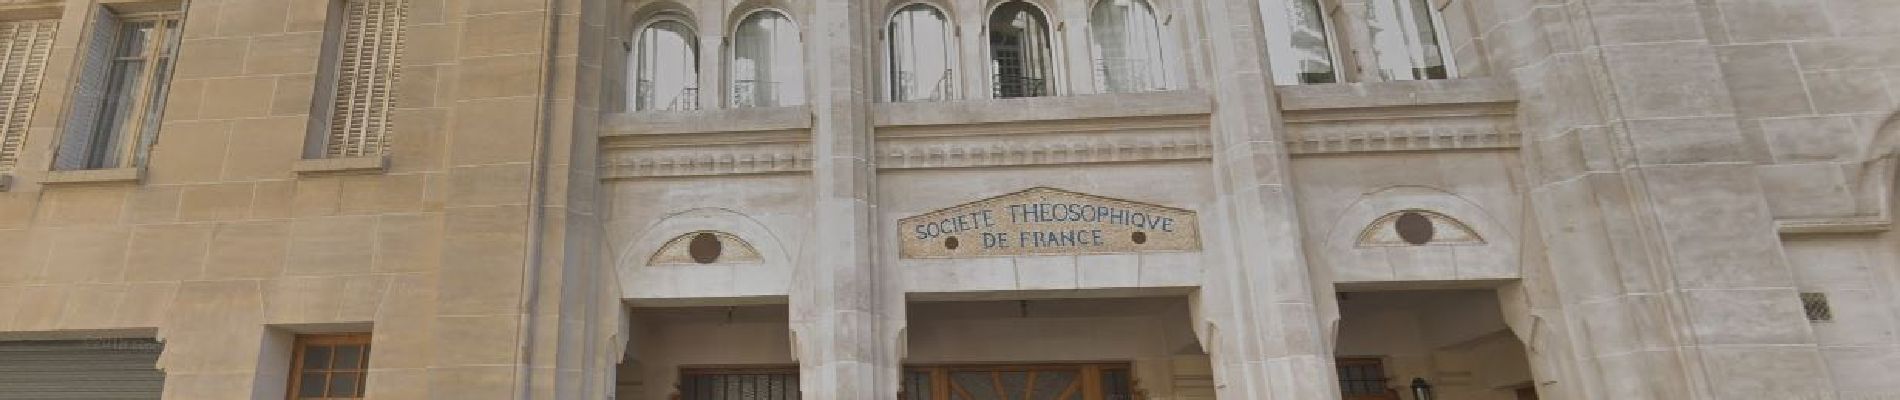 Punto de interés París - Immeuble de la societé Théosophique de France - Photo